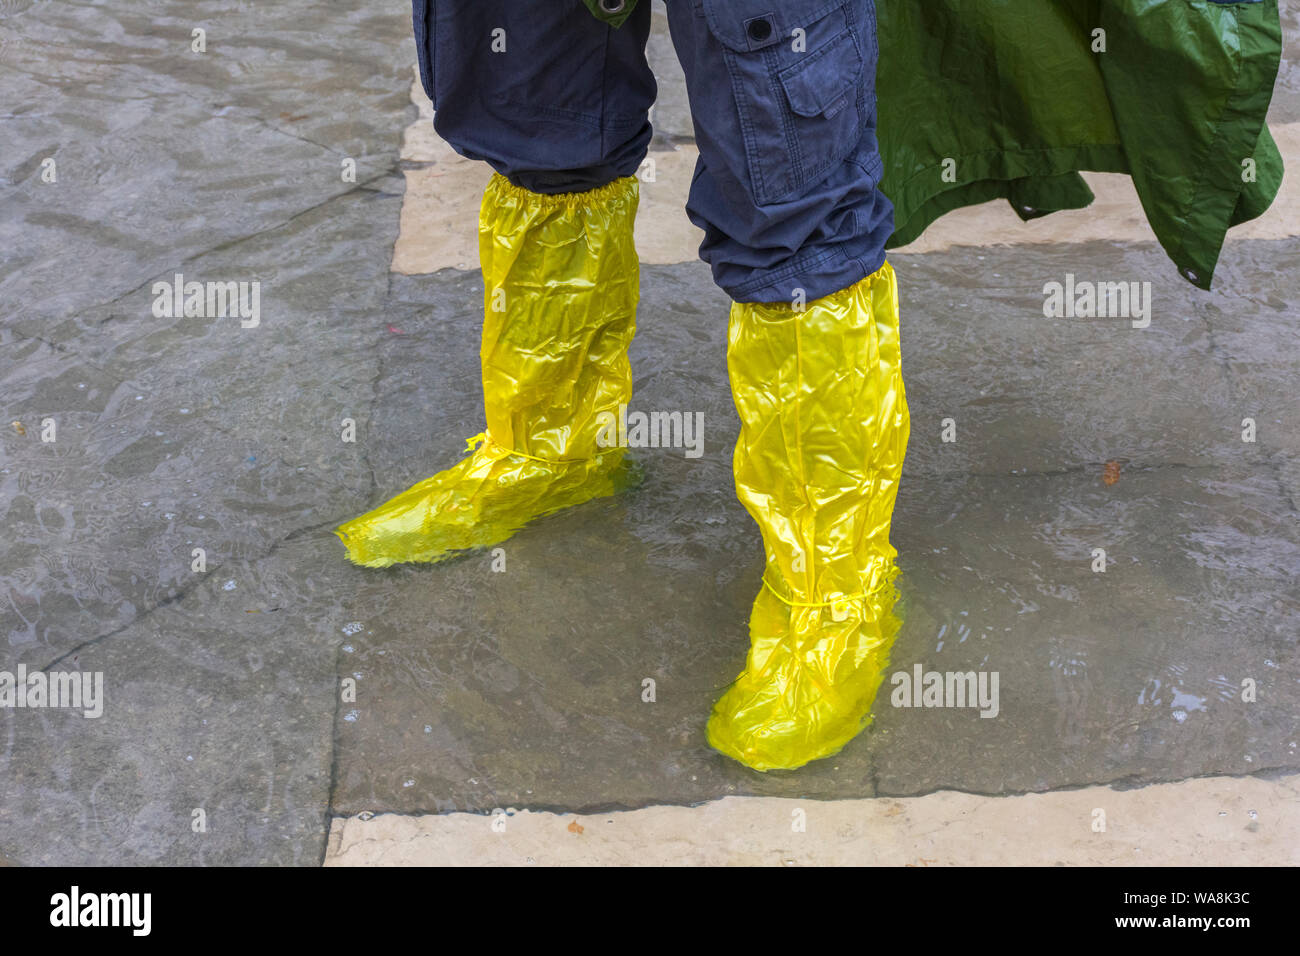 Un homme portant Goldon stivali marionnette-chaussures imperméables au  cours d'une acqua alta (haute mer) cas, la Place Saint Marc, Venise, Italie  Photo Stock - Alamy